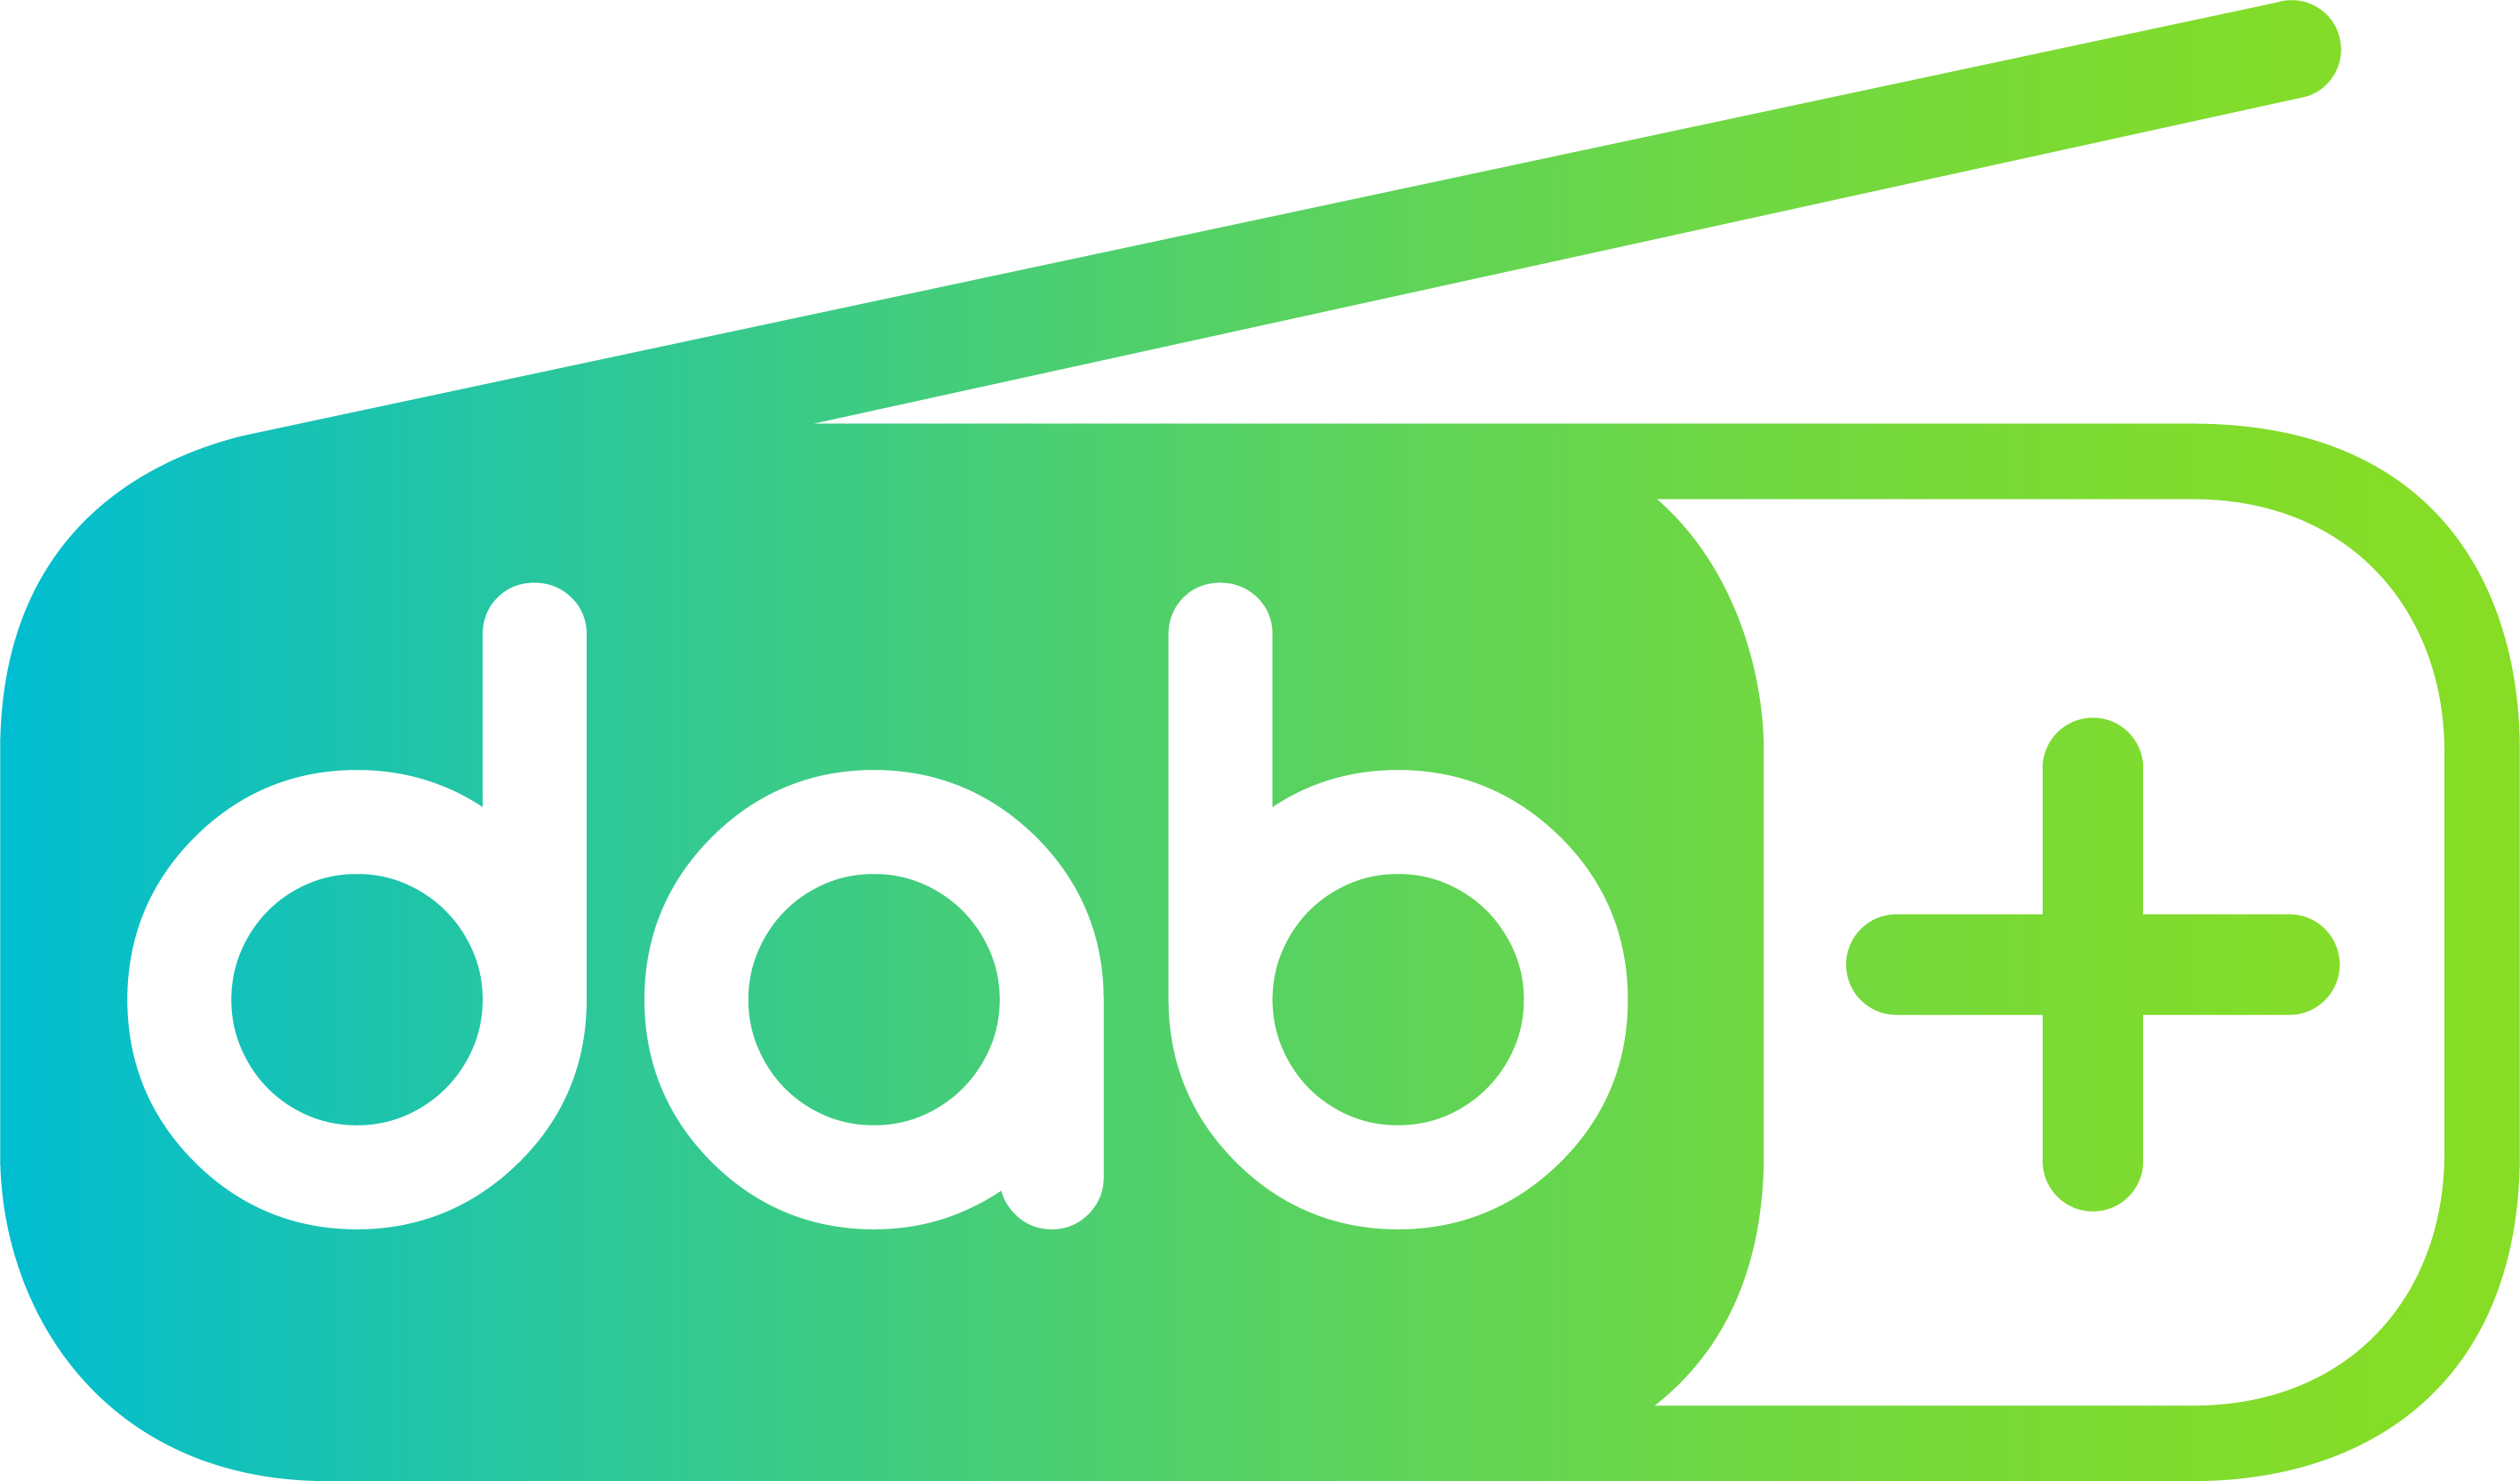 Le logo du DAB+ en France… et dans d'autres pays européens.